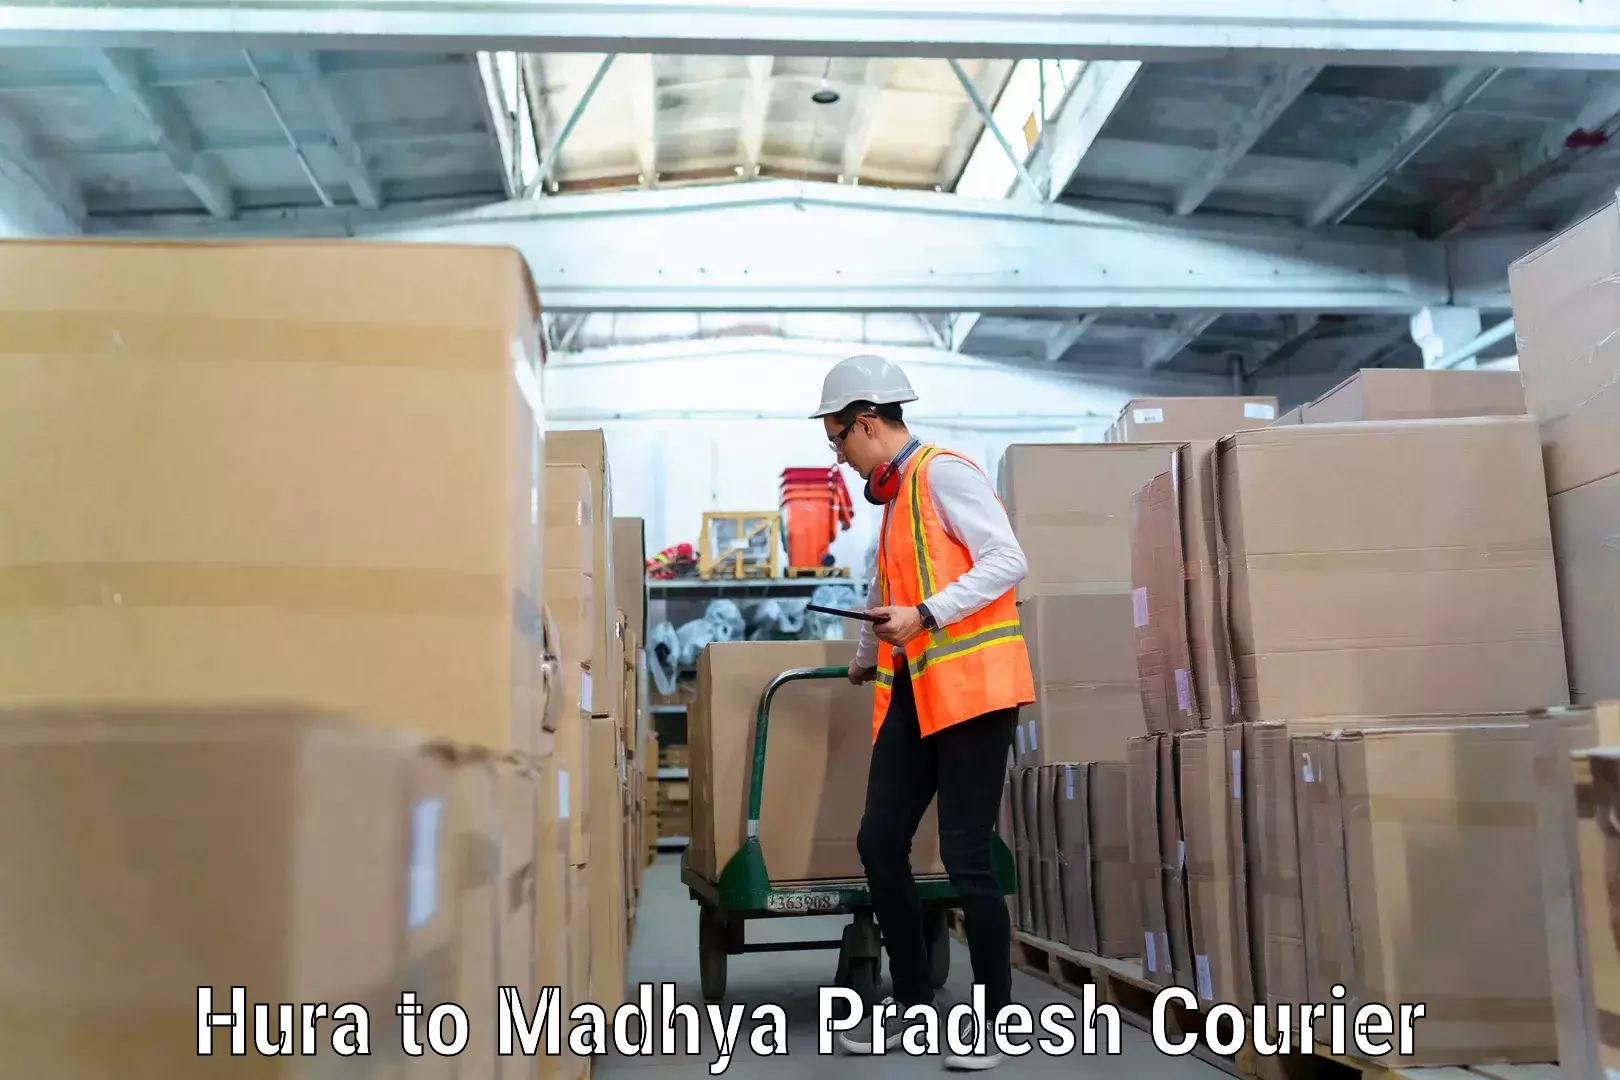 Household goods transporters Hura to Madhya Pradesh